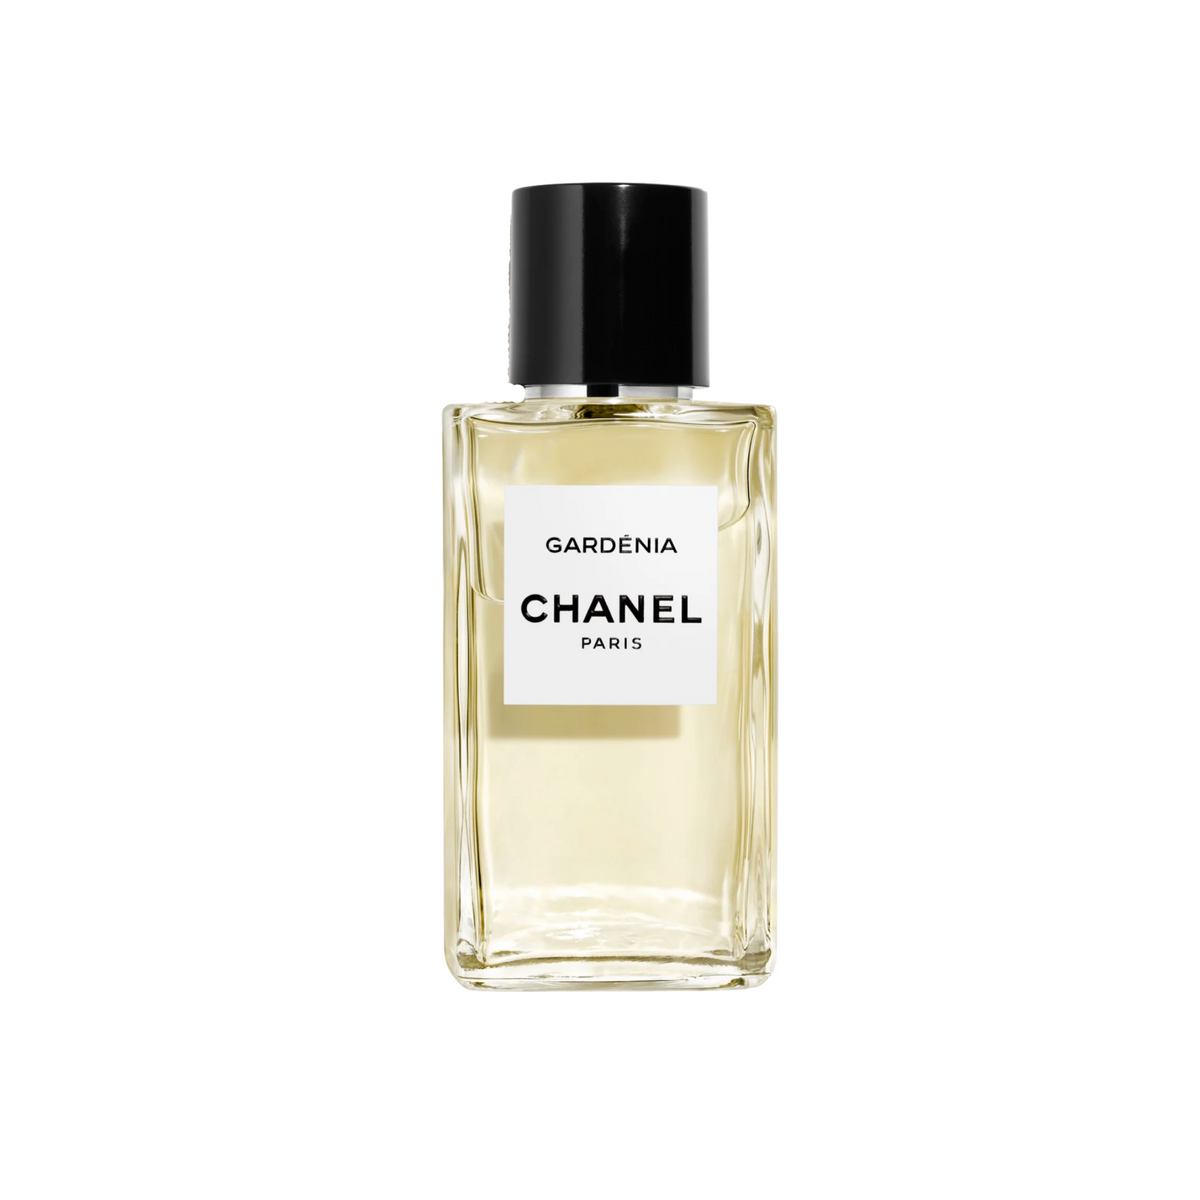 Chanel Gardenia Eau de Parfum for Women